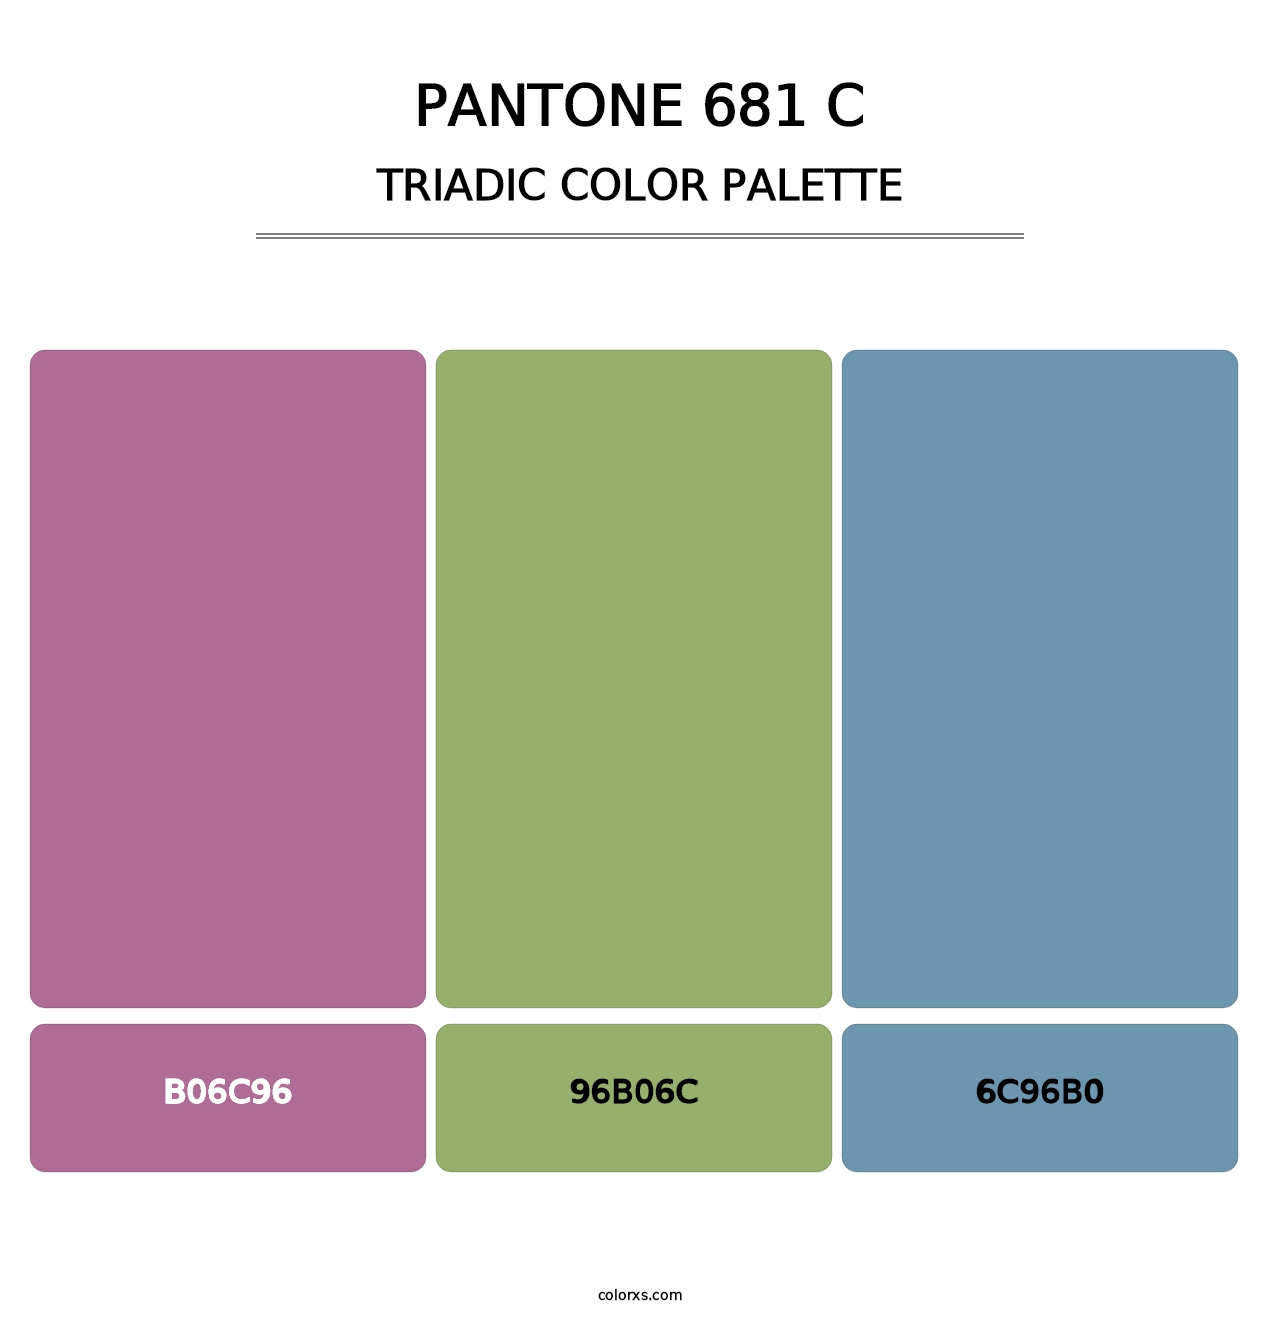 PANTONE 681 C - Triadic Color Palette